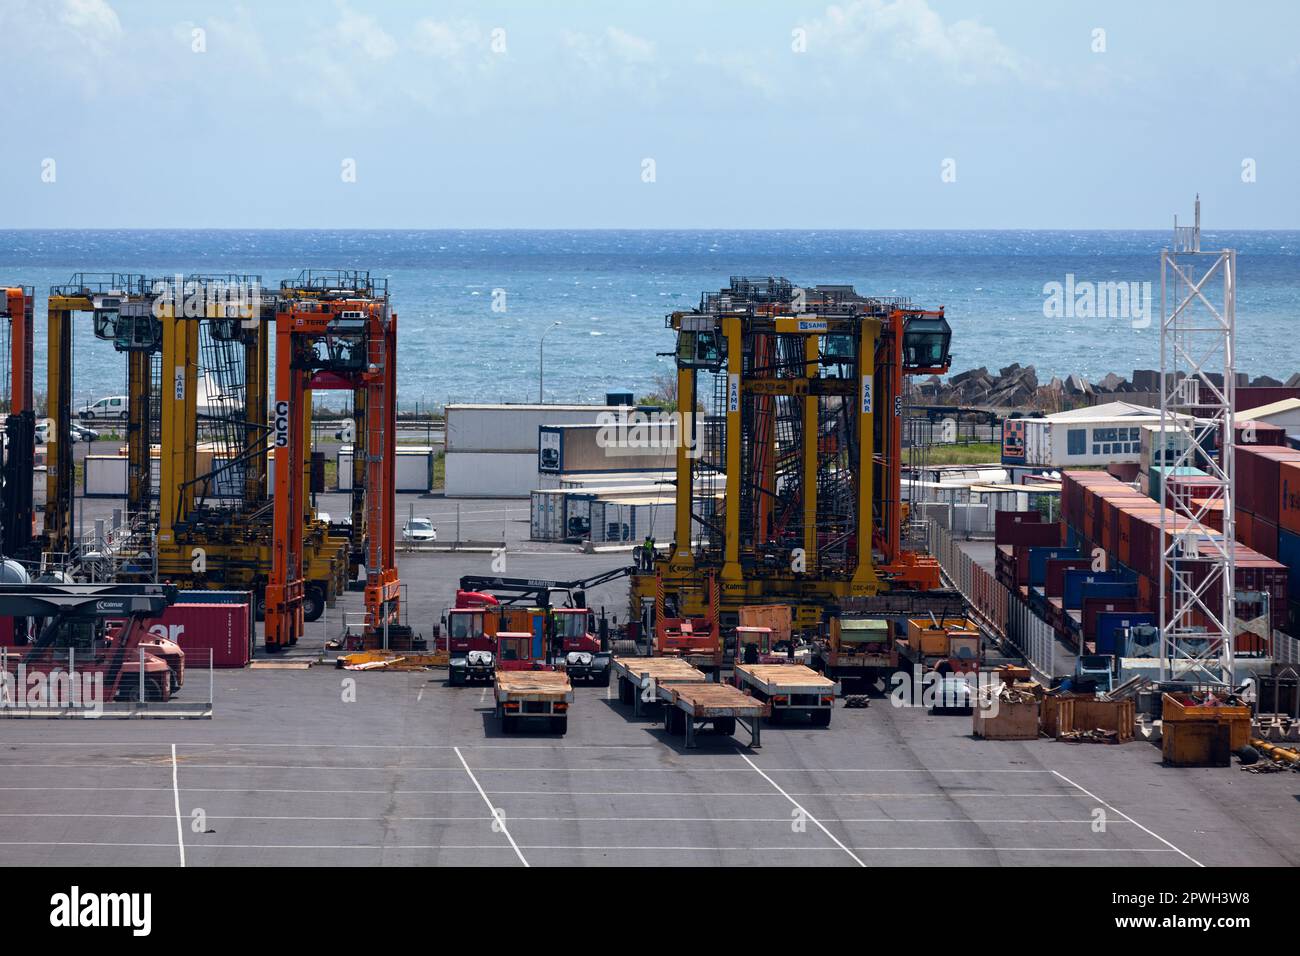 Le Port, Reunion Island - Marsh 08 2017: Containerlader und Maschinen vom Port Réunion Est, einem Handelsdock an der Küste c Stockfoto